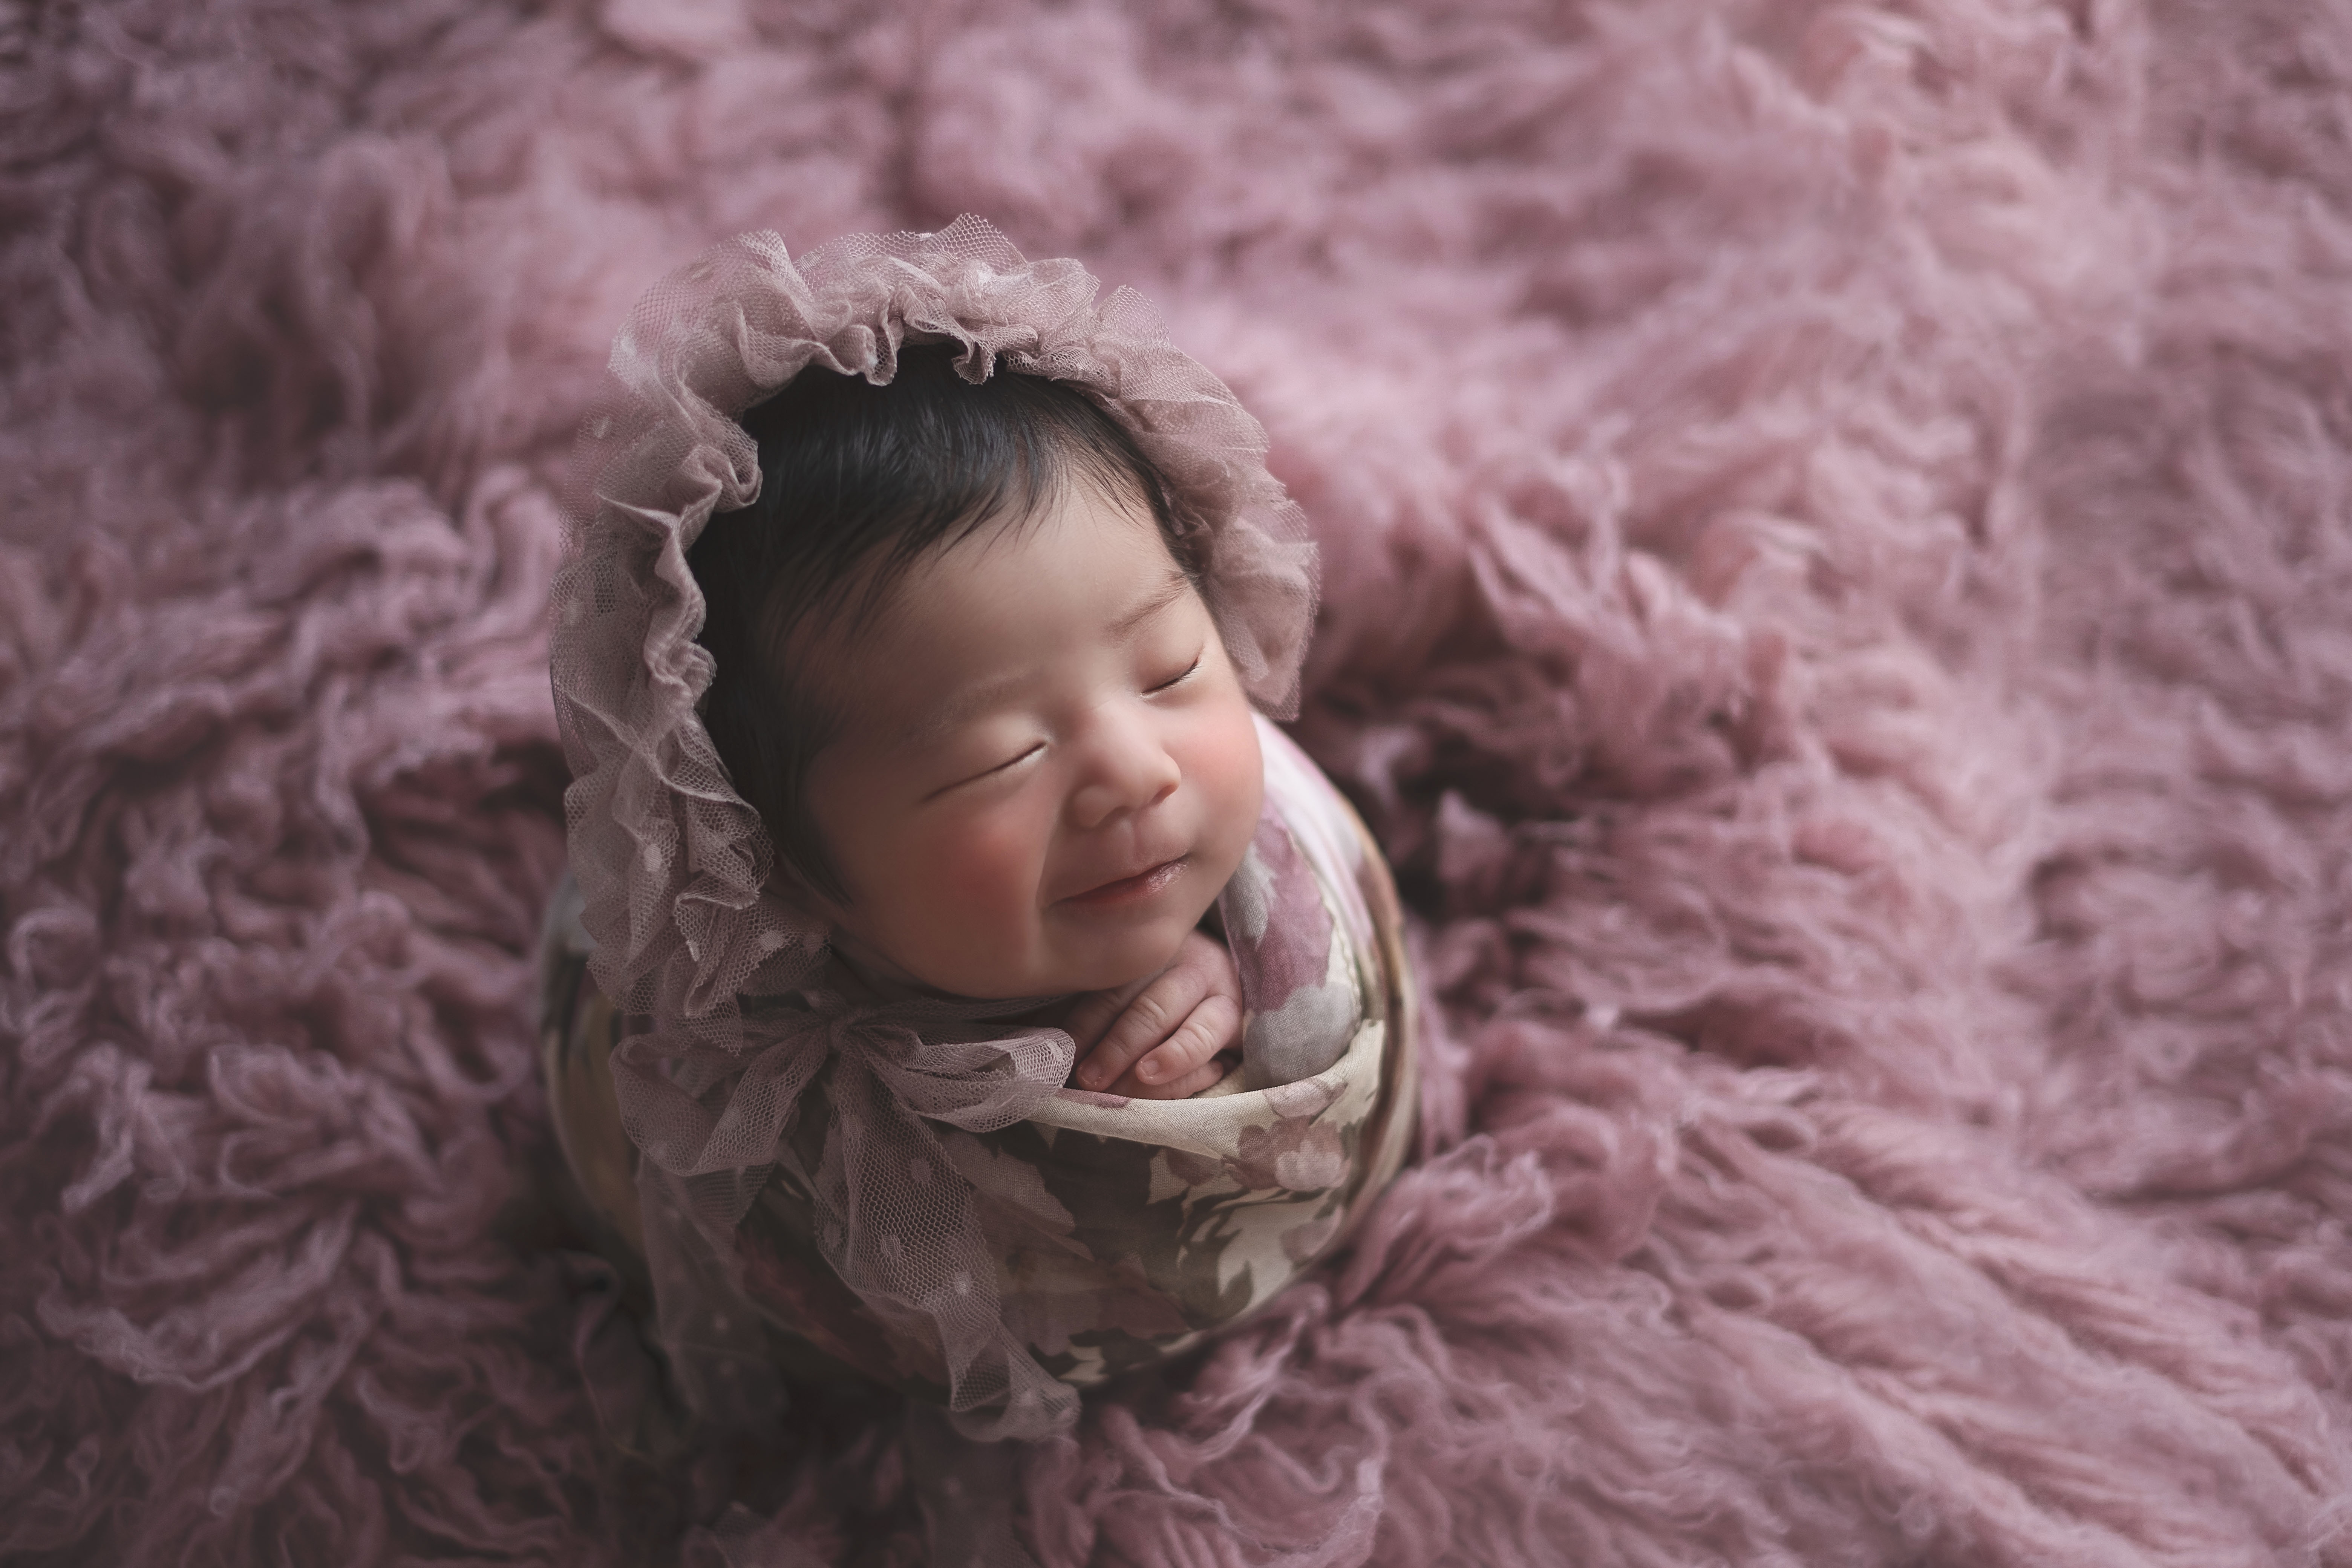 滋賀・京都・大阪ニューボーンフォトの撮影・出張撮影ならMimi newborn photography